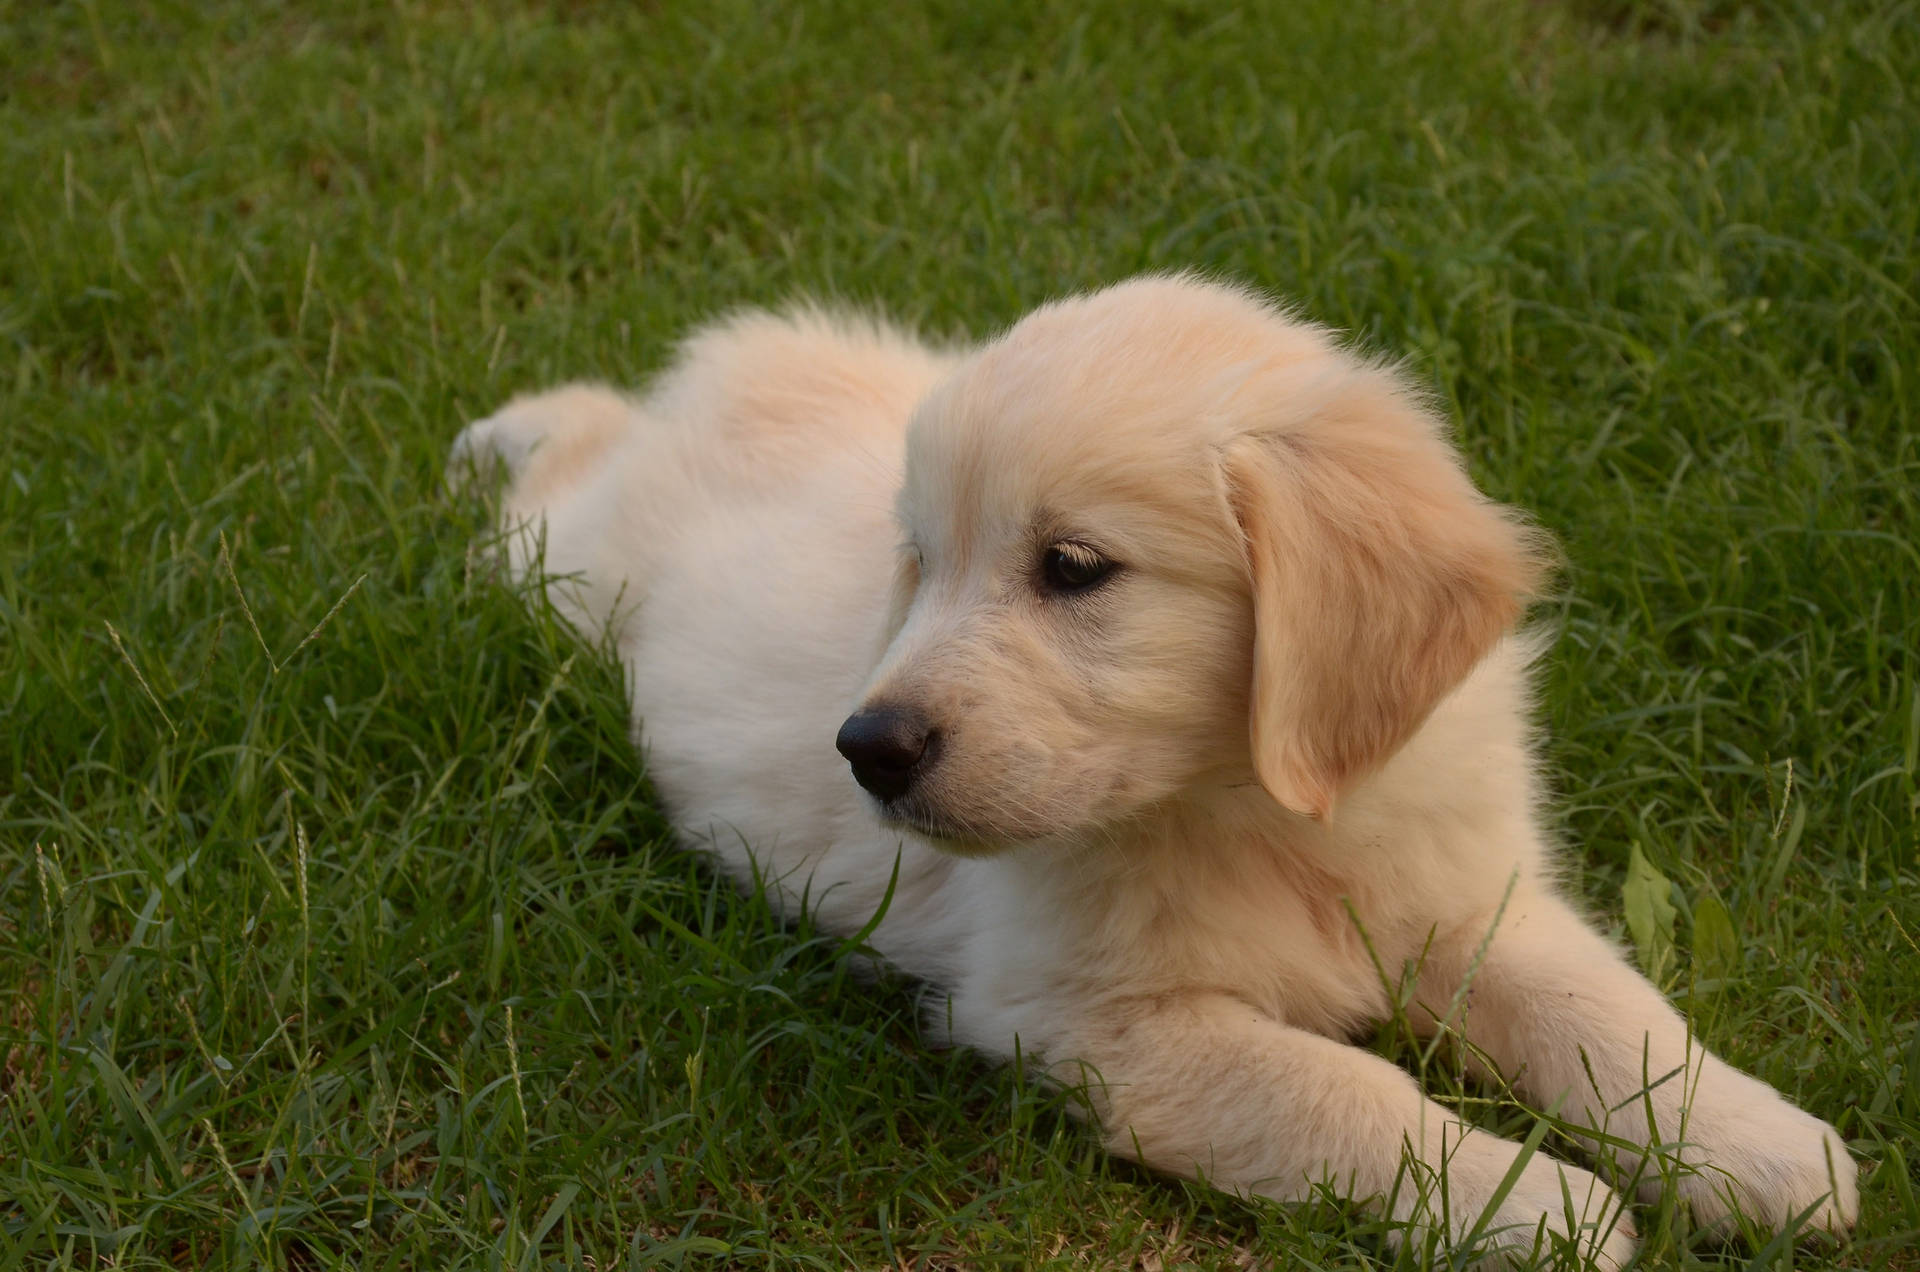 Adorable Golden Retriever Puppy